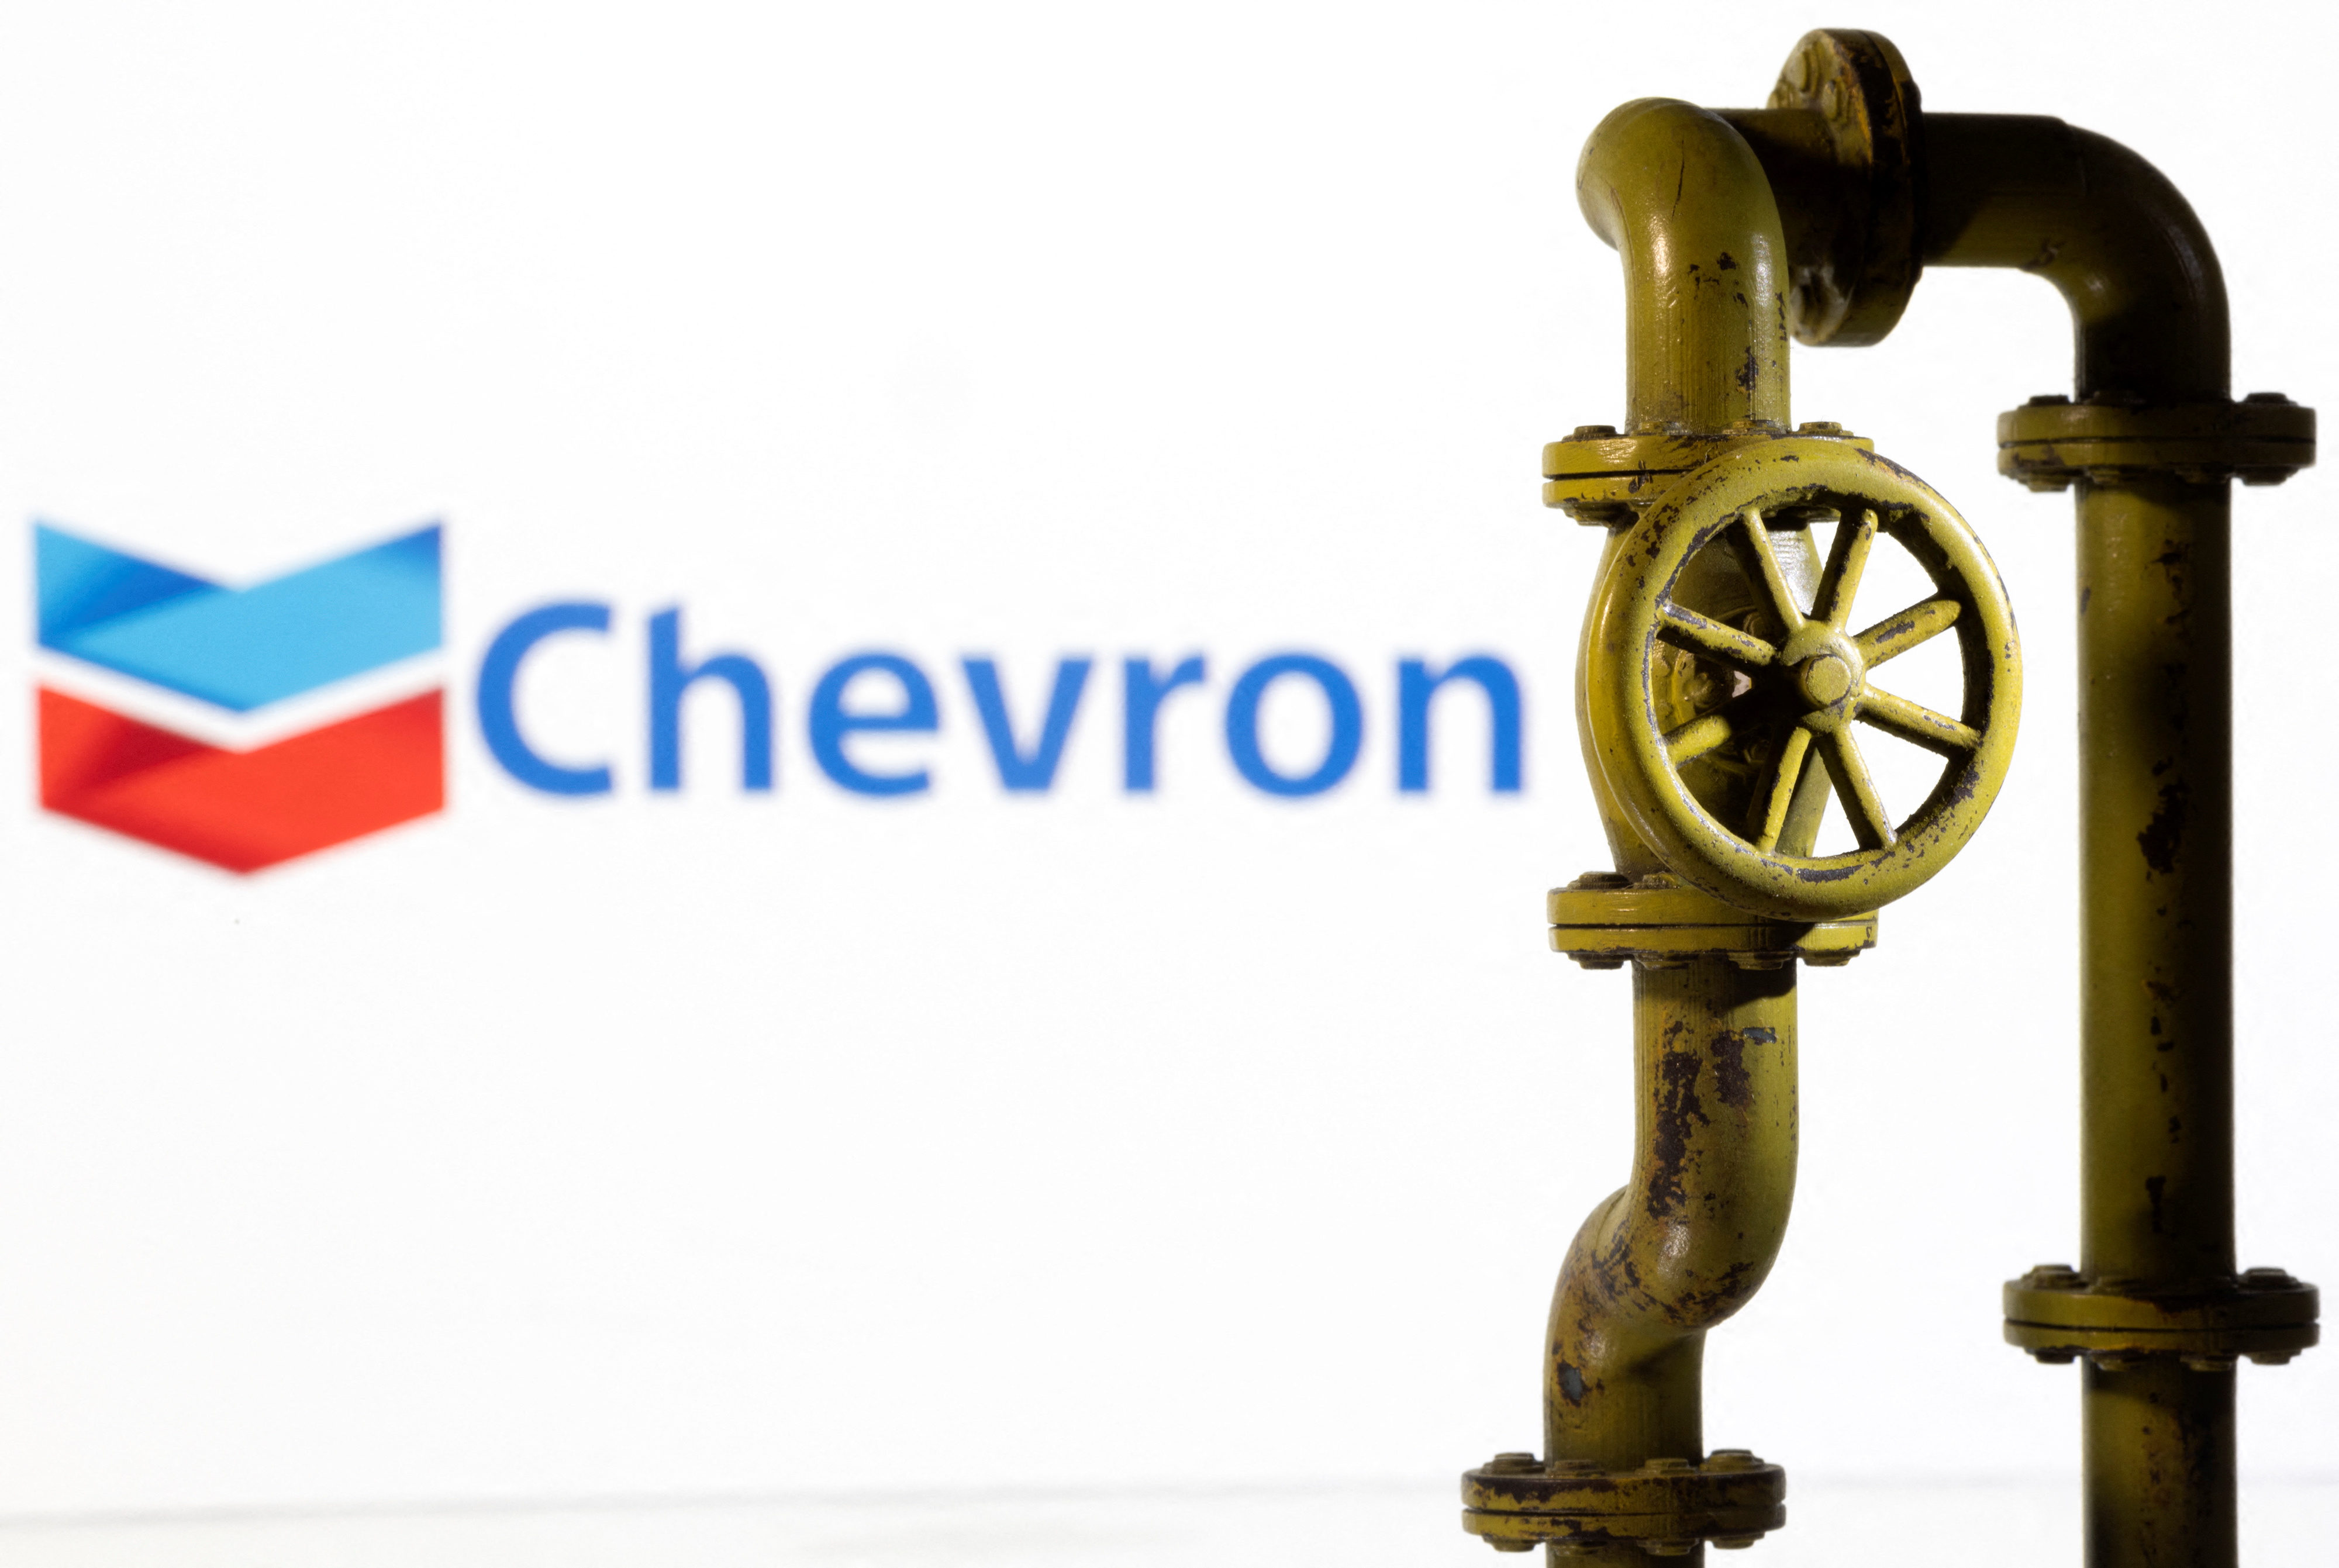 Die Abbildung zeigt das Chevron-Logo und die Erdgaspipeline